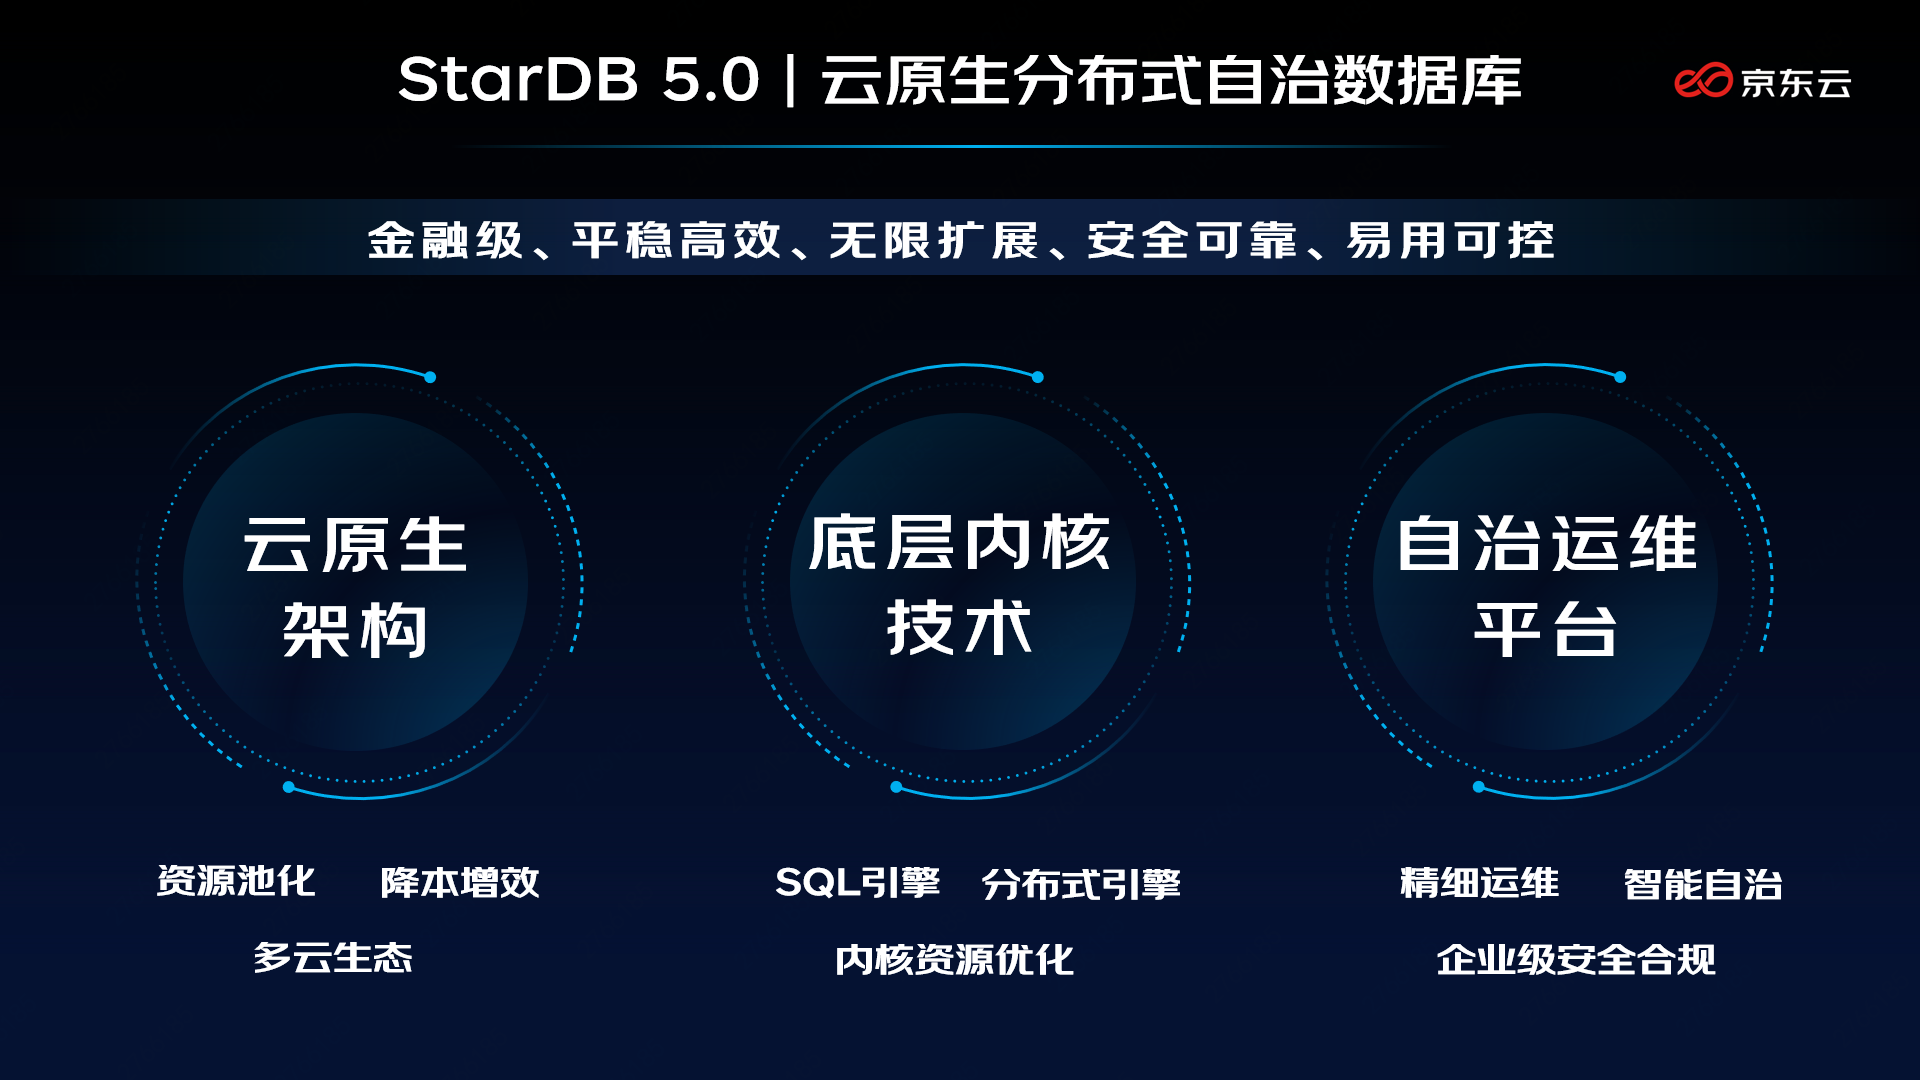 性能全面加速！京东云发布新一代分布式数据库StarDB 5.0